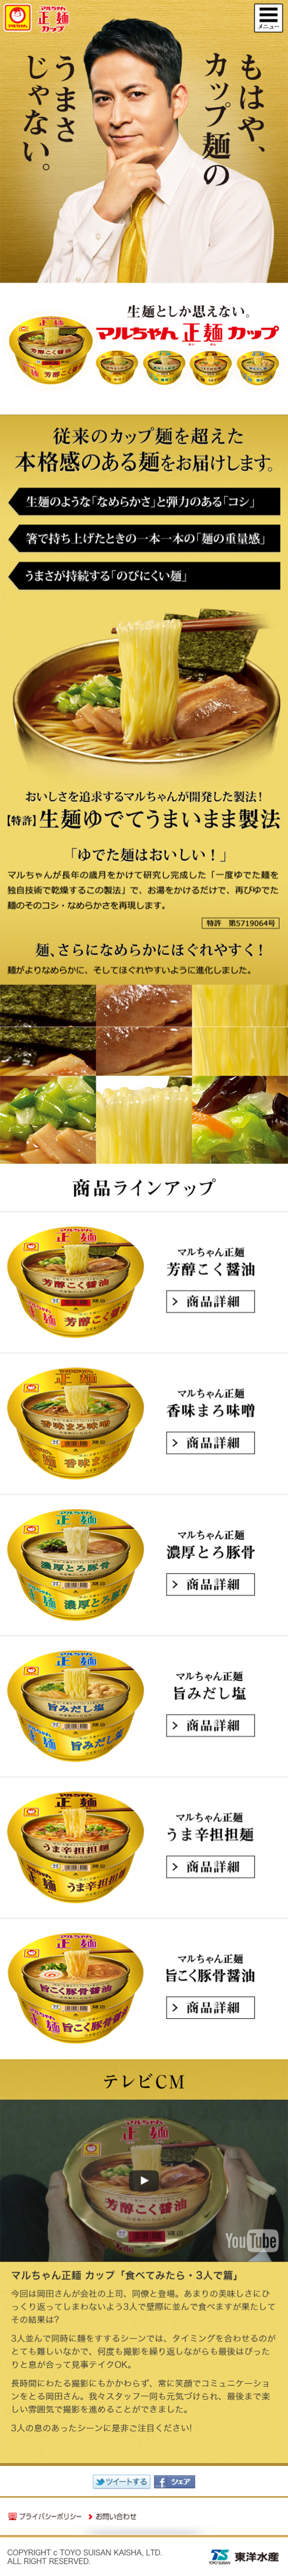 マルちゃん製麺カップ_sp_1